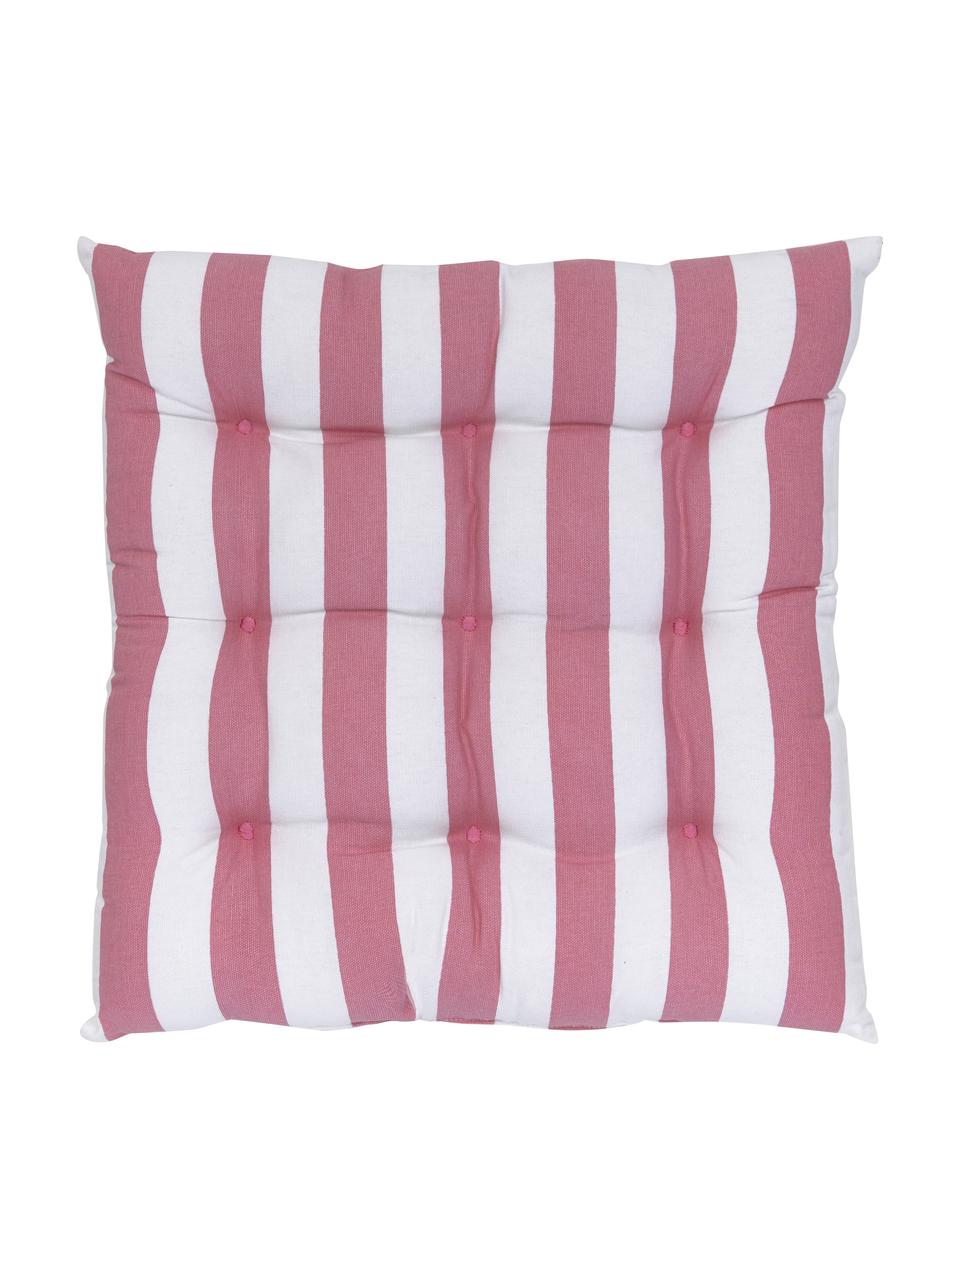 Gestreiftes Sitzkissen Timon in Rosa/Weiß, Bezug: 100% Baumwolle, Rosa, Weiß, B 40 x L 40 cm